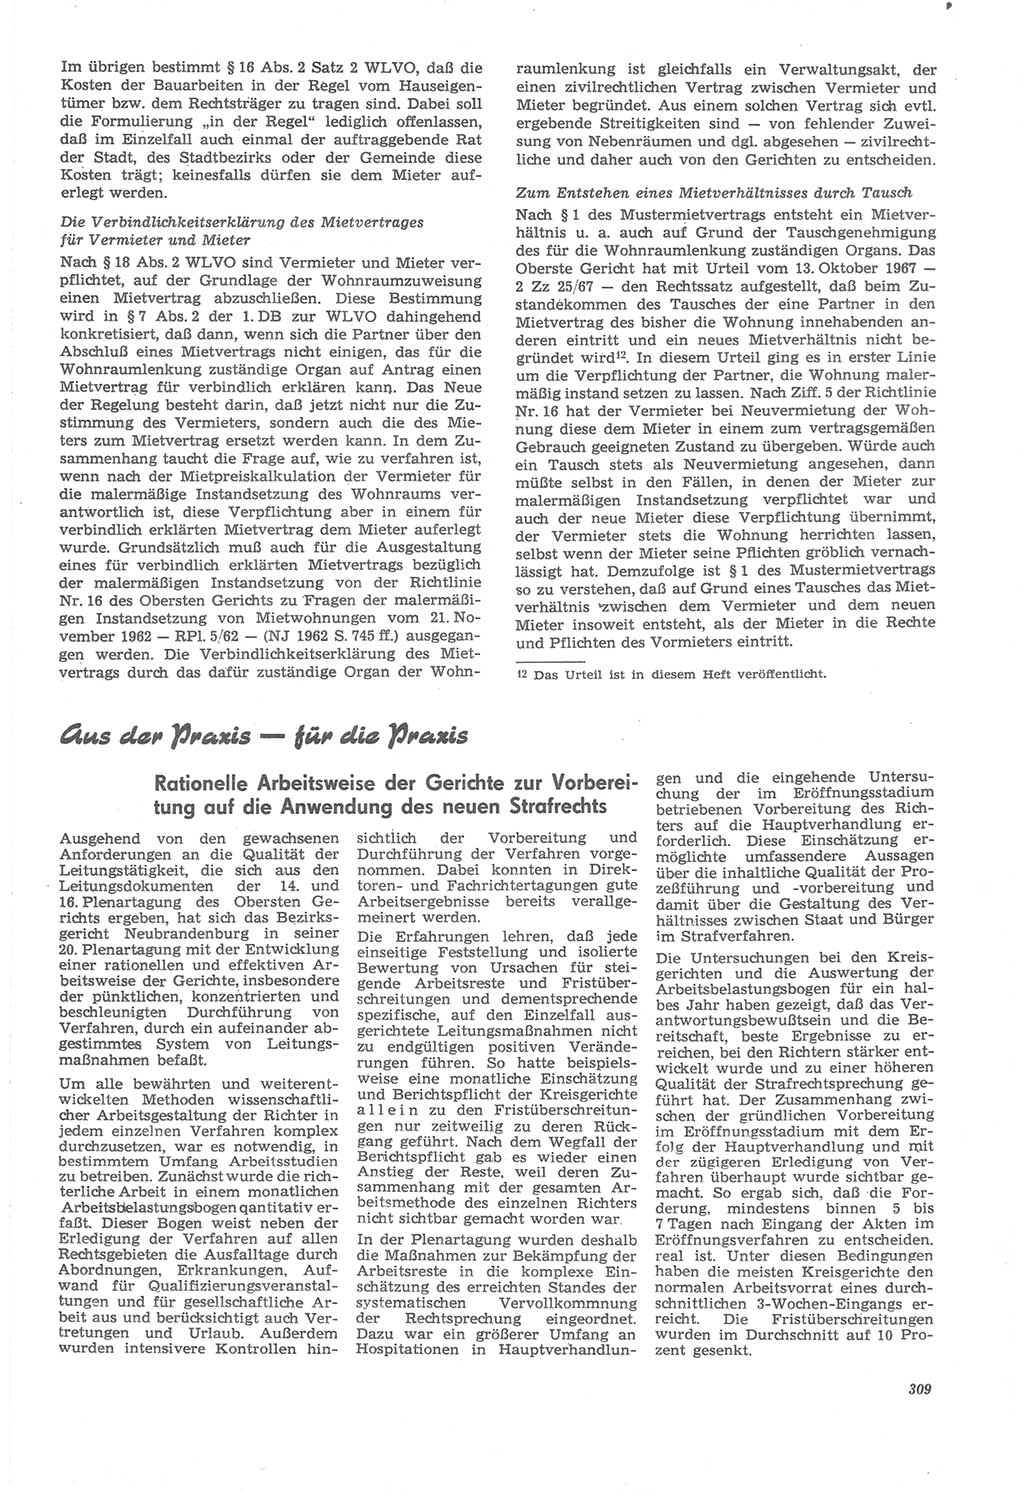 Neue Justiz (NJ), Zeitschrift für Recht und Rechtswissenschaft [Deutsche Demokratische Republik (DDR)], 22. Jahrgang 1968, Seite 309 (NJ DDR 1968, S. 309)